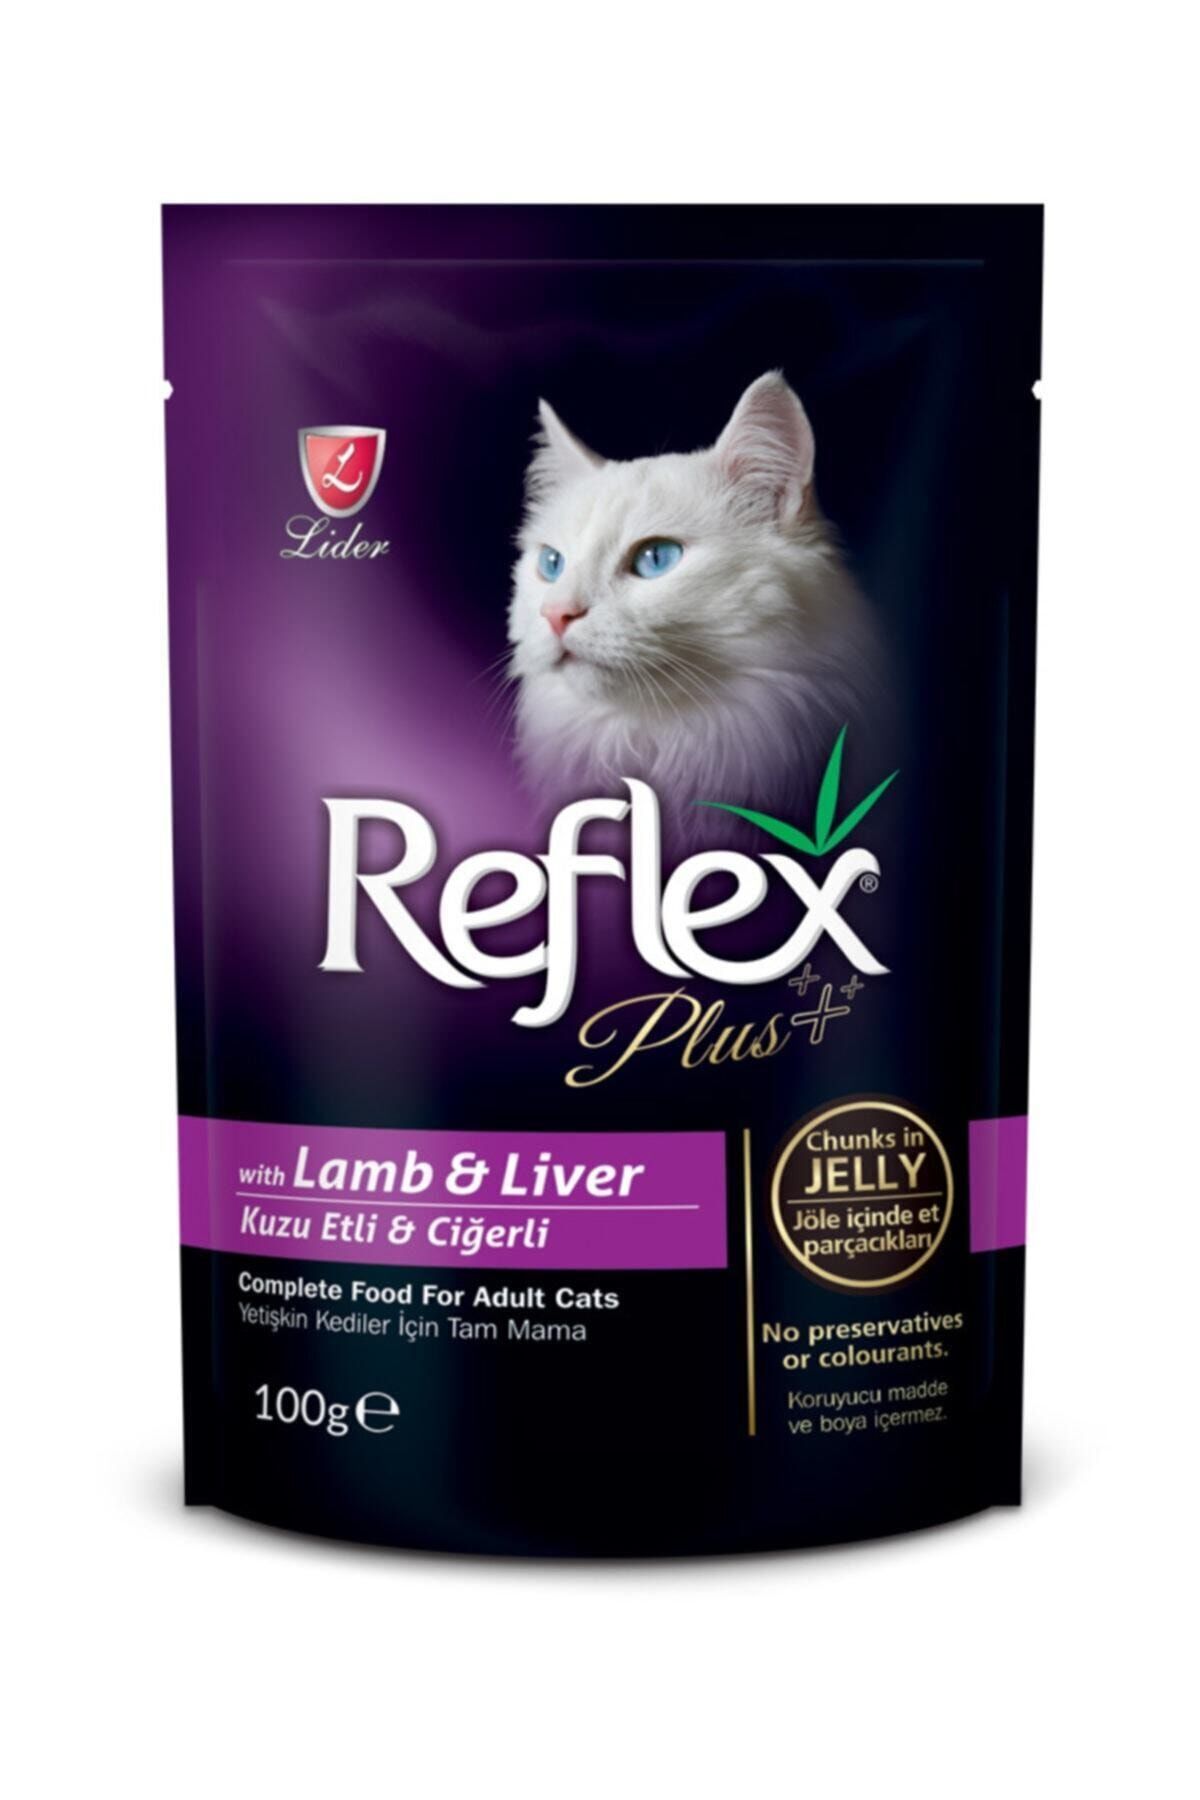 Reflex Plus Kuzulu Ve Ciğerli Pouch Kedi Konserve Jöle İçinde Et Parçacıklı 100 Gr